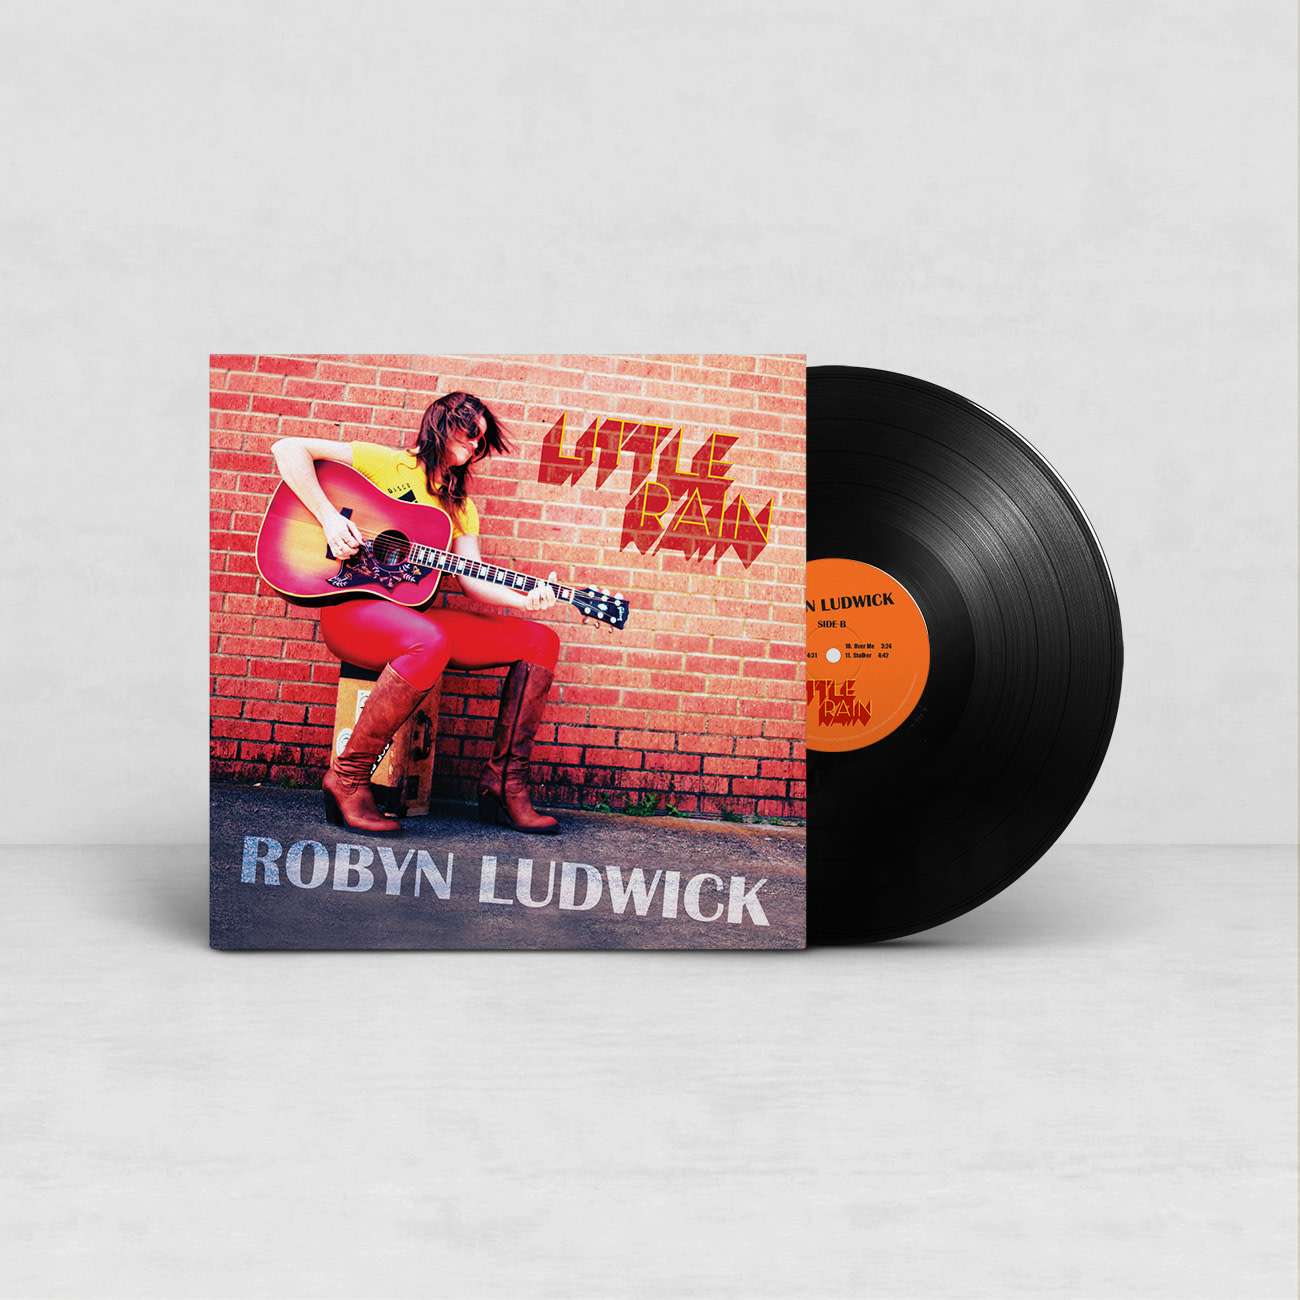 Robyn Ludwick – Little Rain